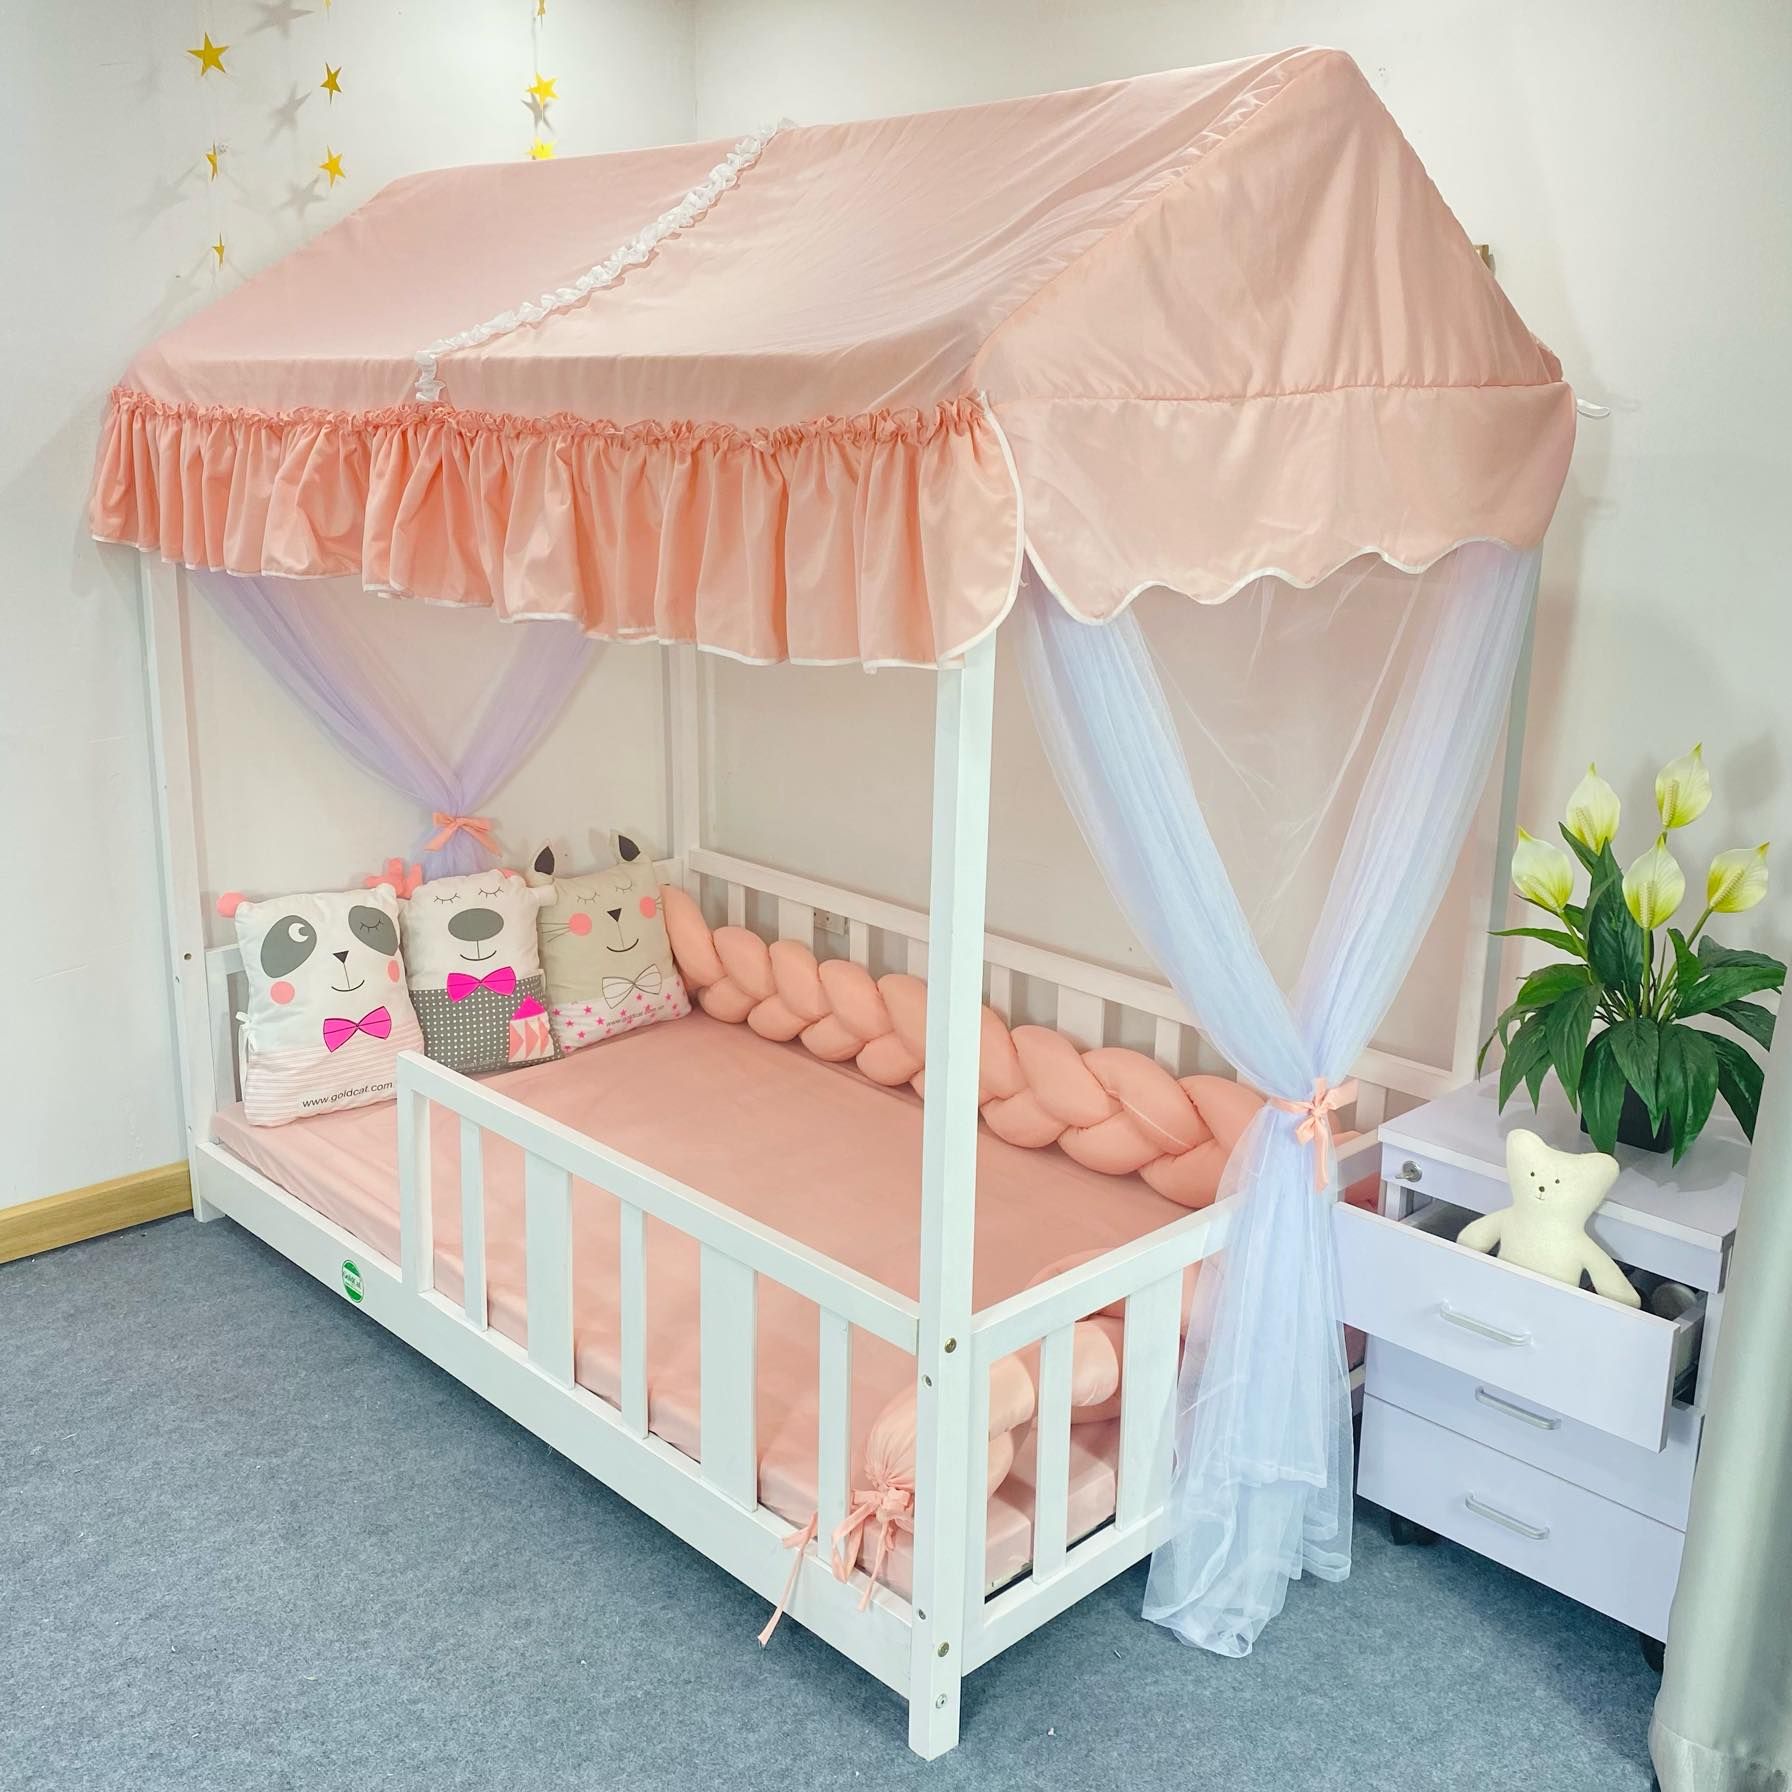 Giường ngủ công chúa hình ngôi nhà cho bé nhỏ nhắn màu hồng có rèm che